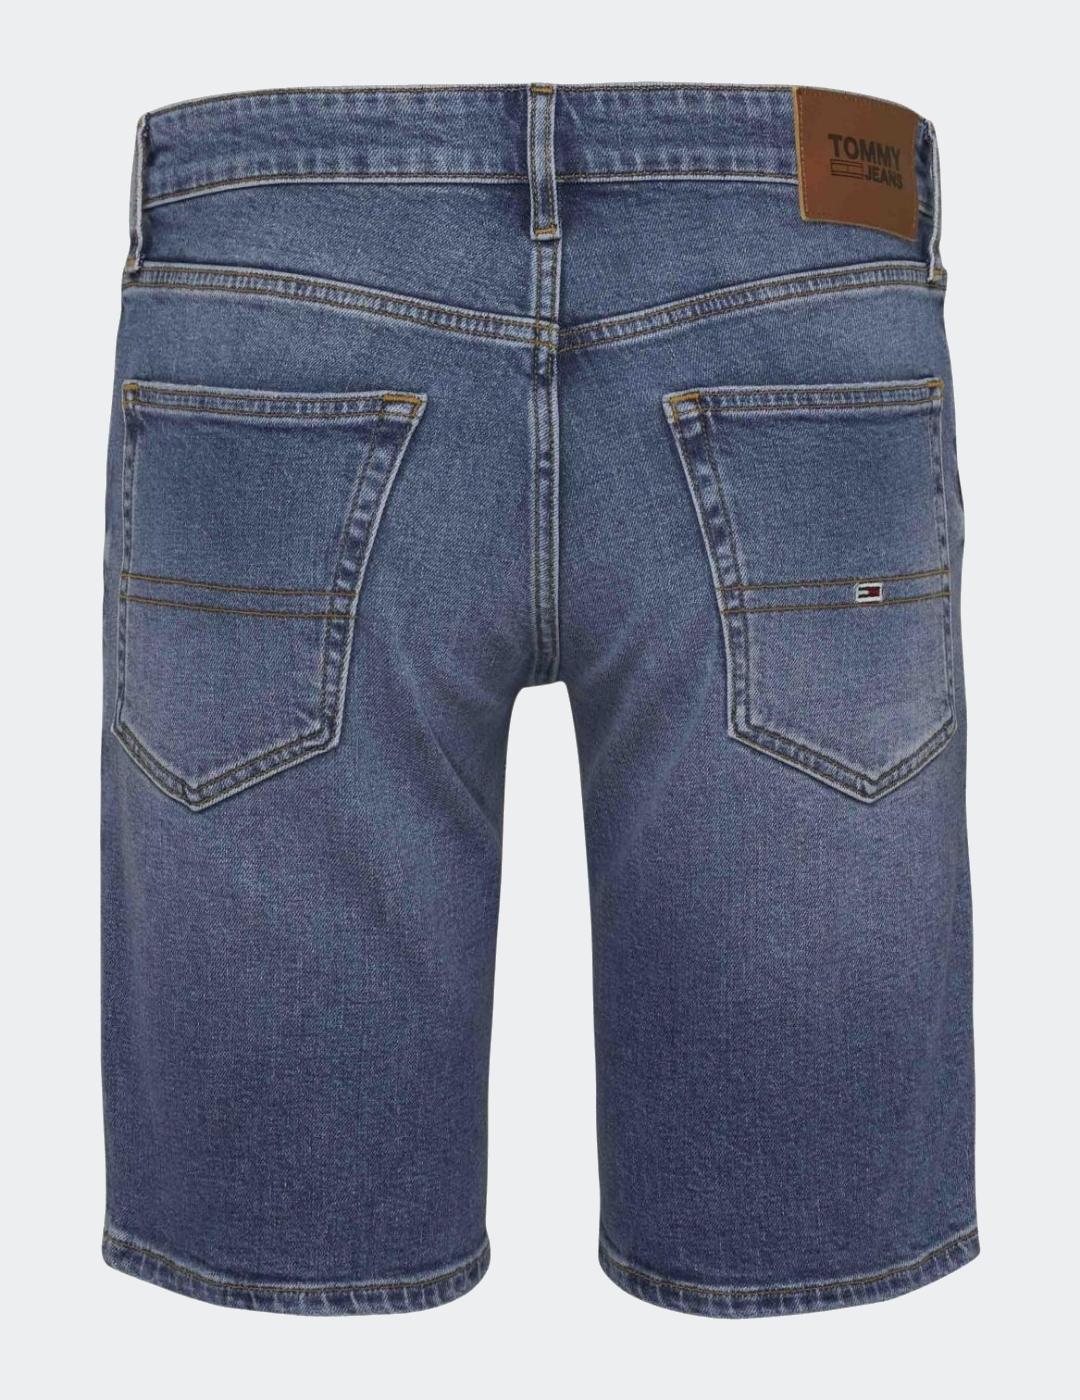 Bermuda Tommy Jeans Scanton azul dark para hombre